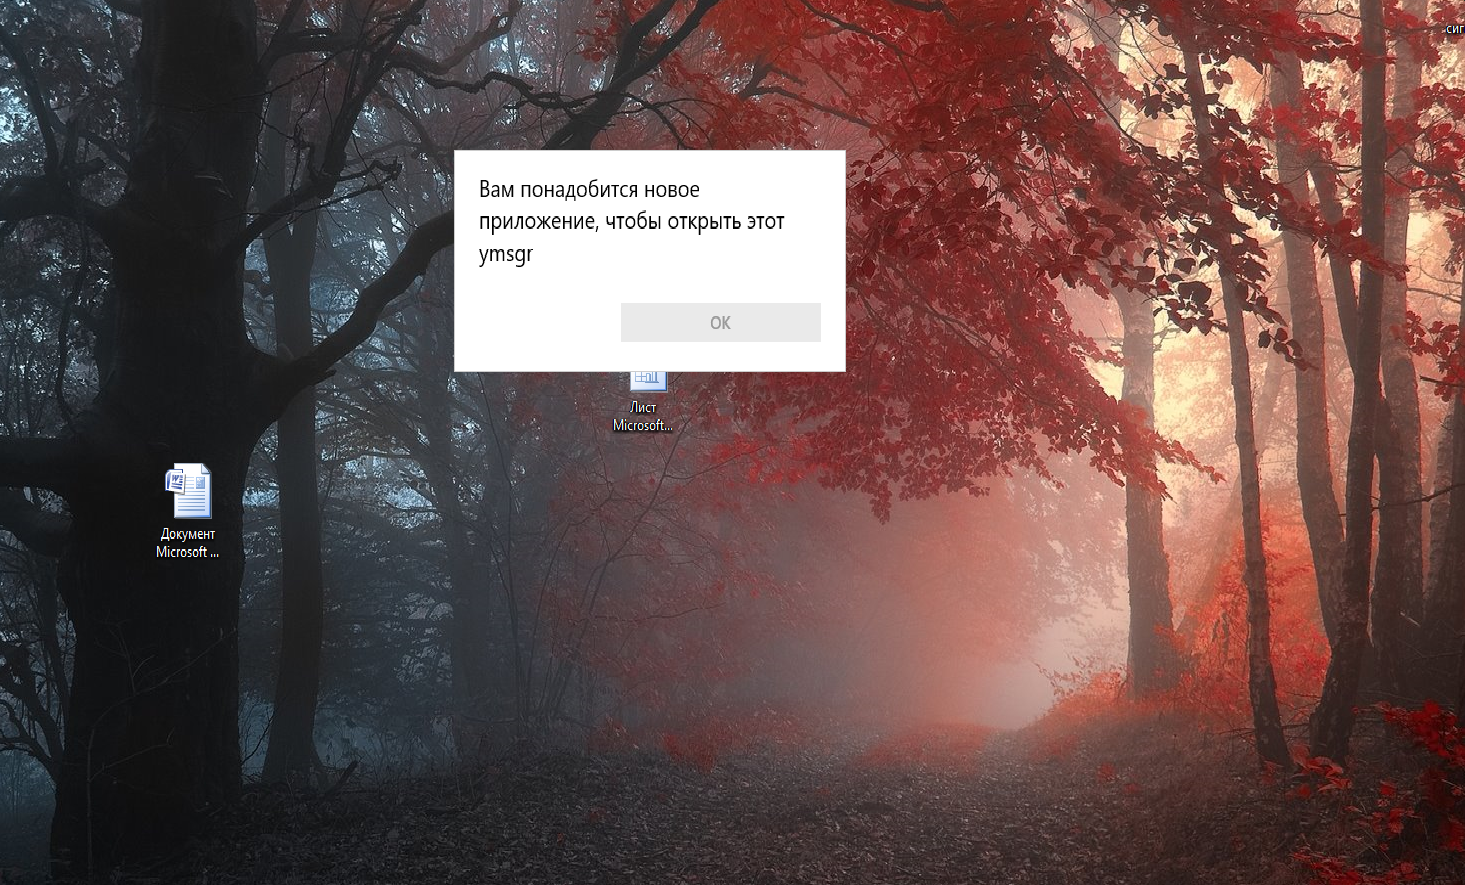 Windows 10 вам понадобится новое приложение чтобы открыть этот steam фото 3